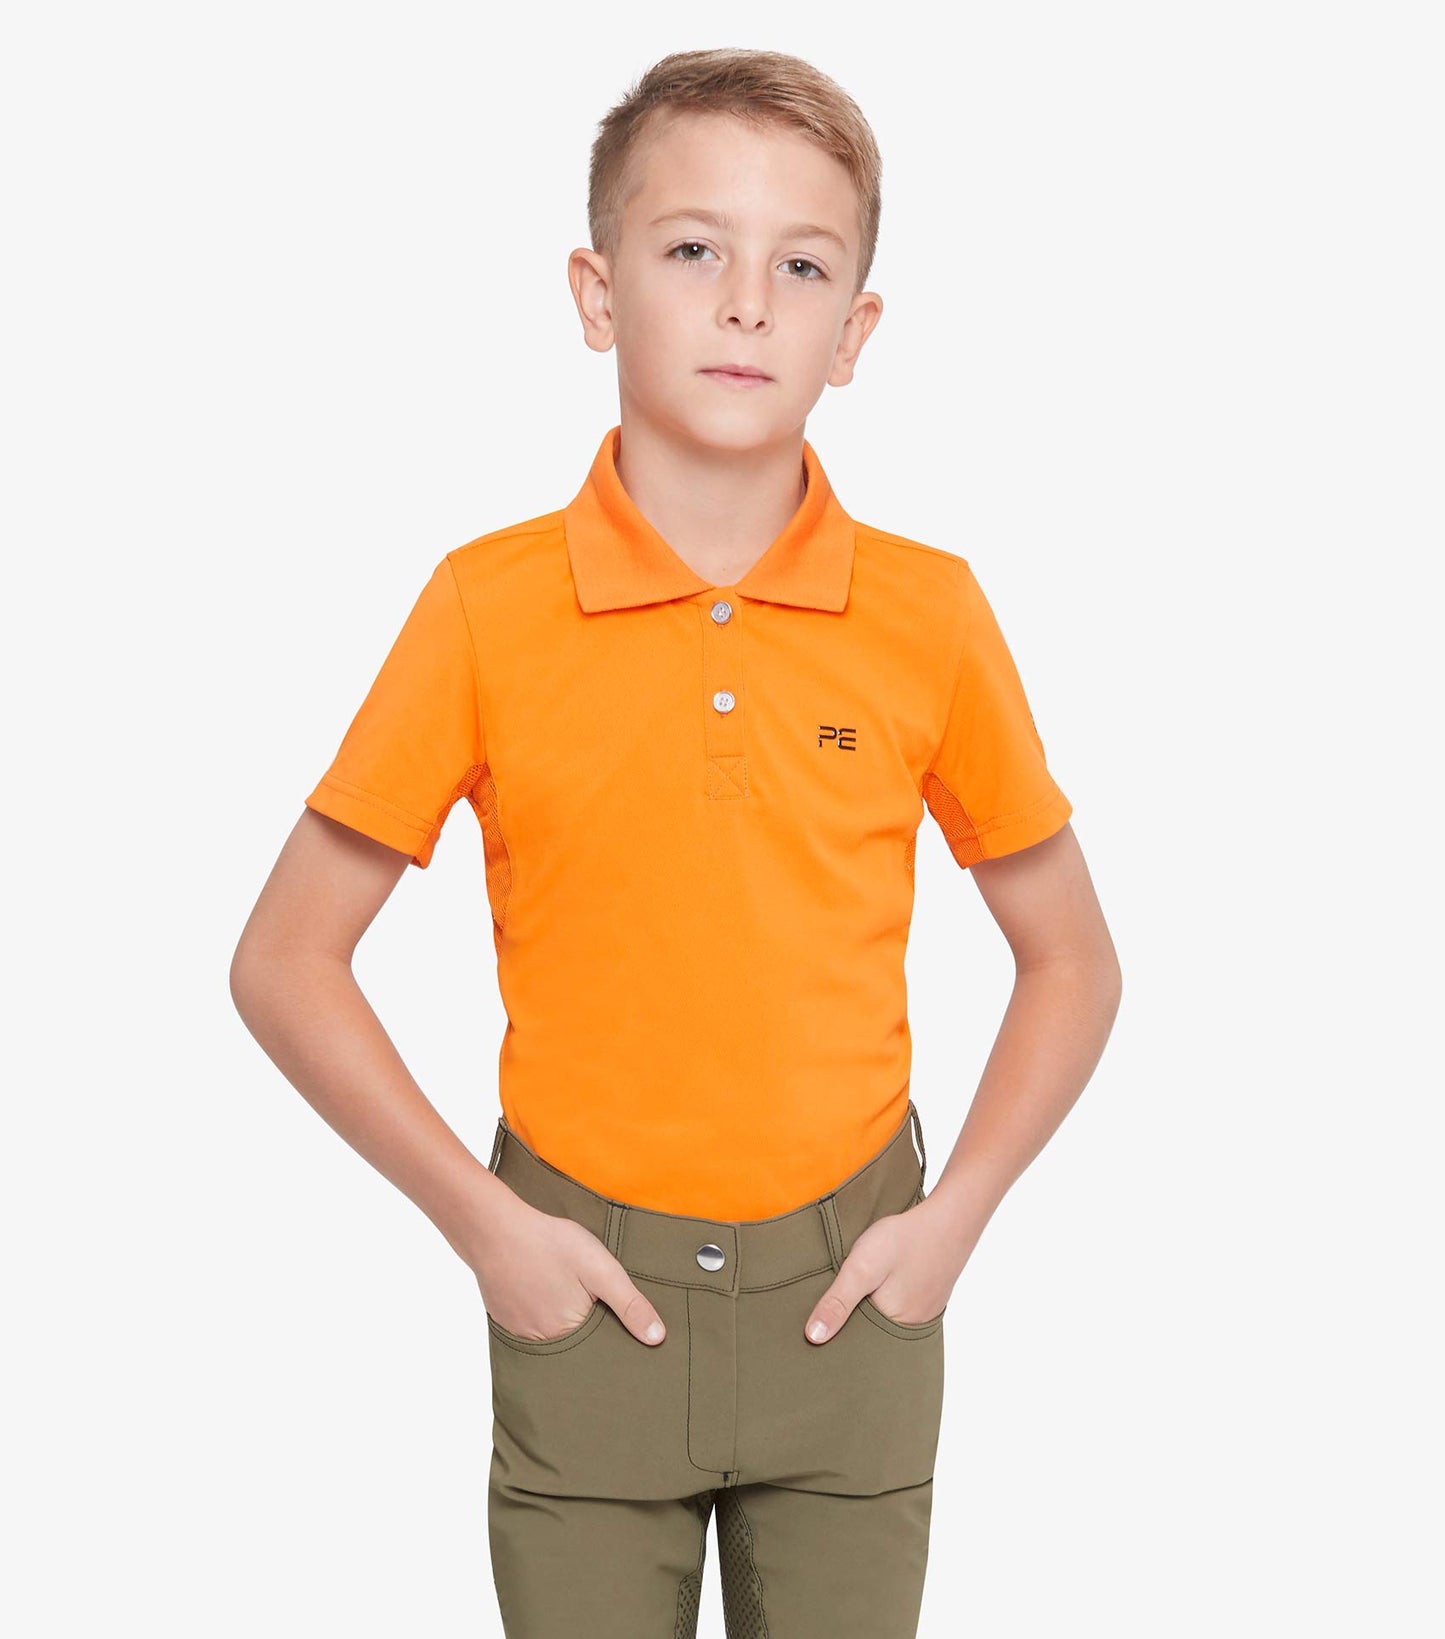 Premier Equine Cisco Kids Polo Shirt (Boys and girls)